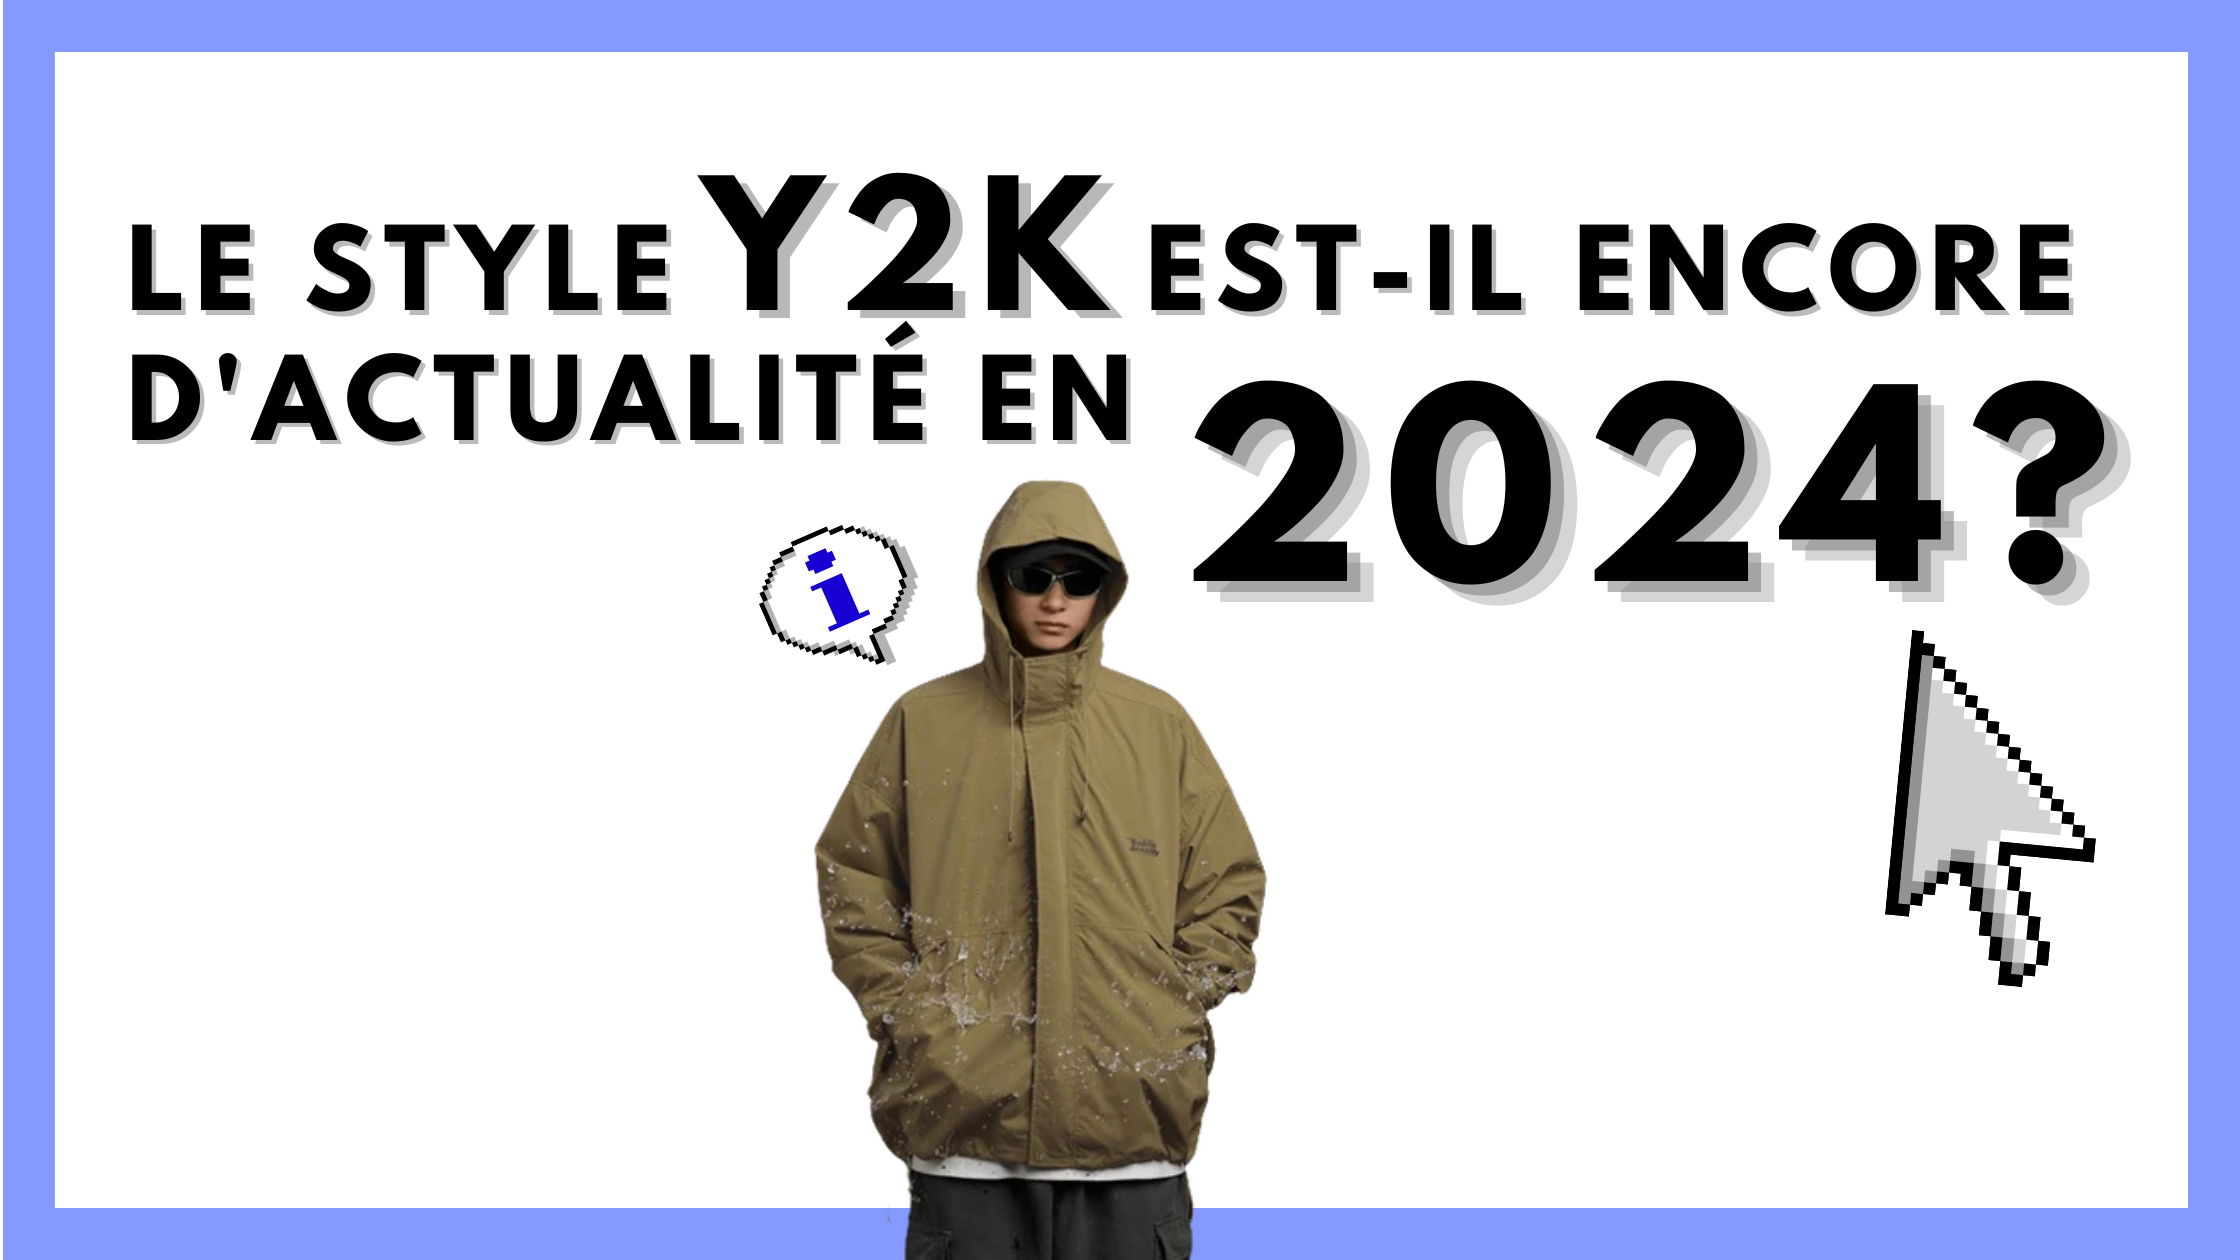 Le style Y2K est-il encore d'actualité en 2024 ?